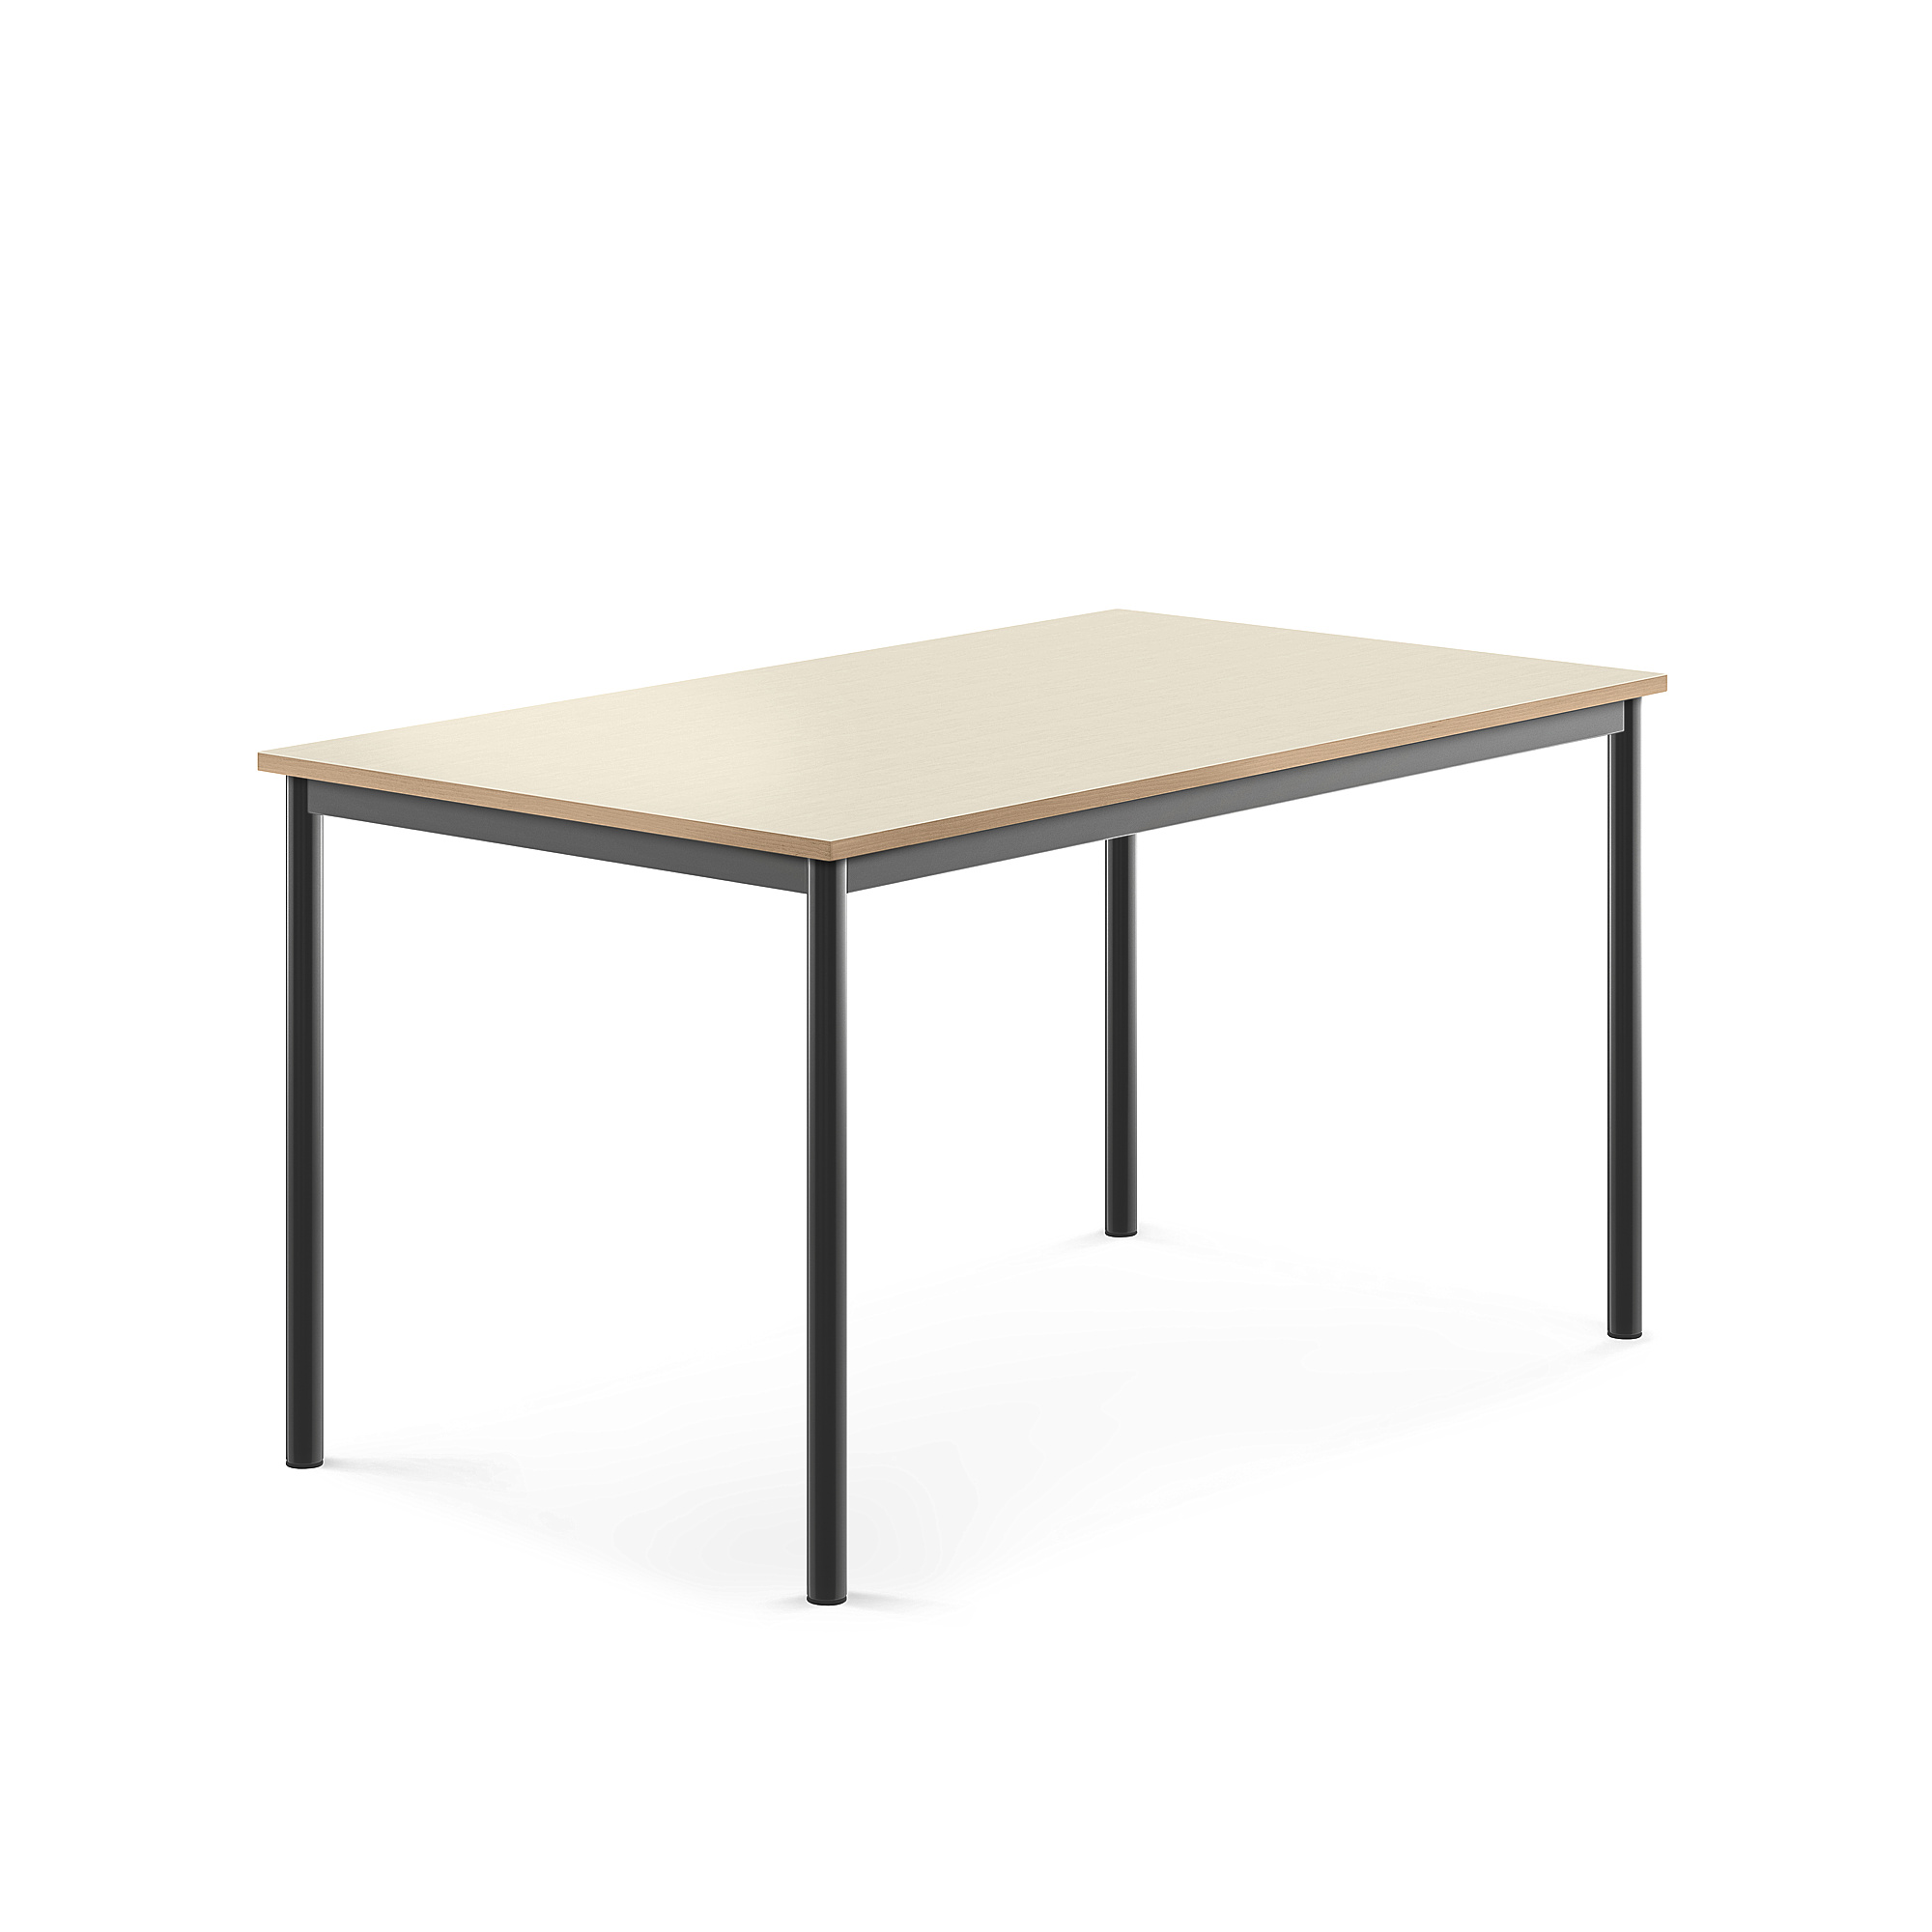 Stůl BORÅS, 1400x800x720 mm, antracitově šedé nohy, HPL deska, bříza